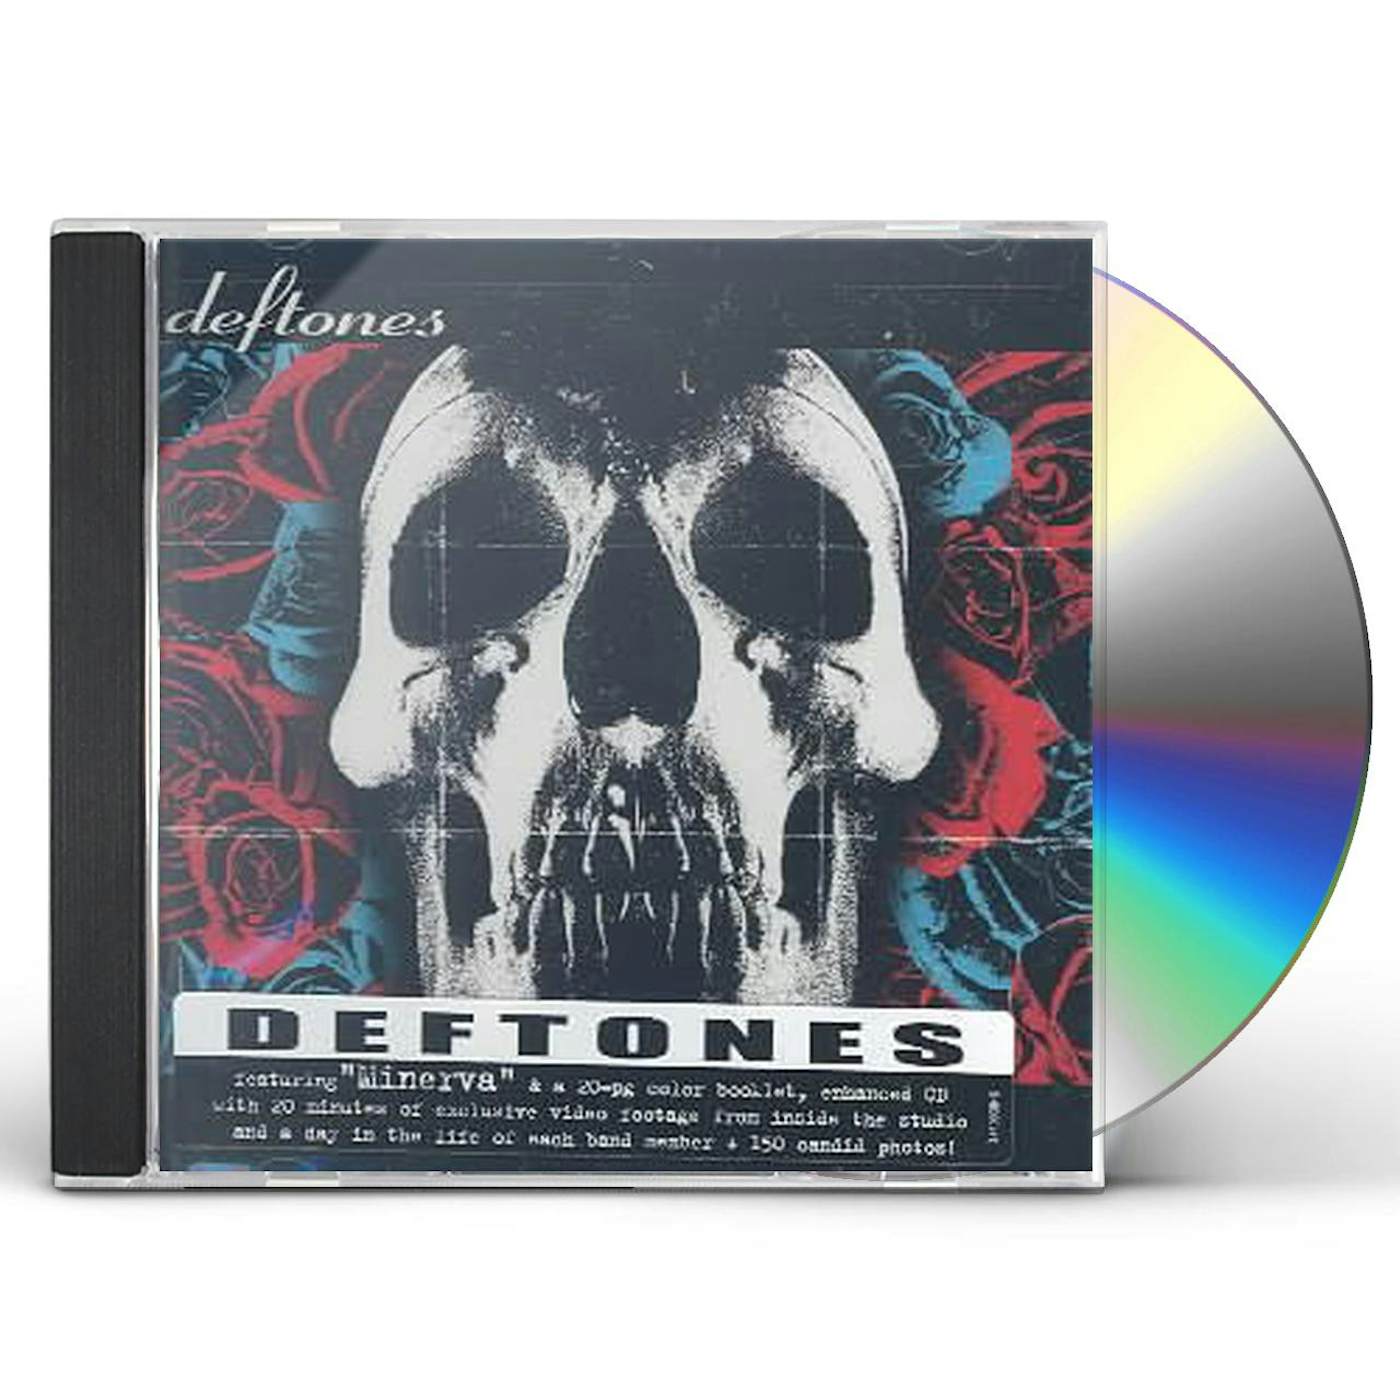  Deftones: CDs & Vinyl